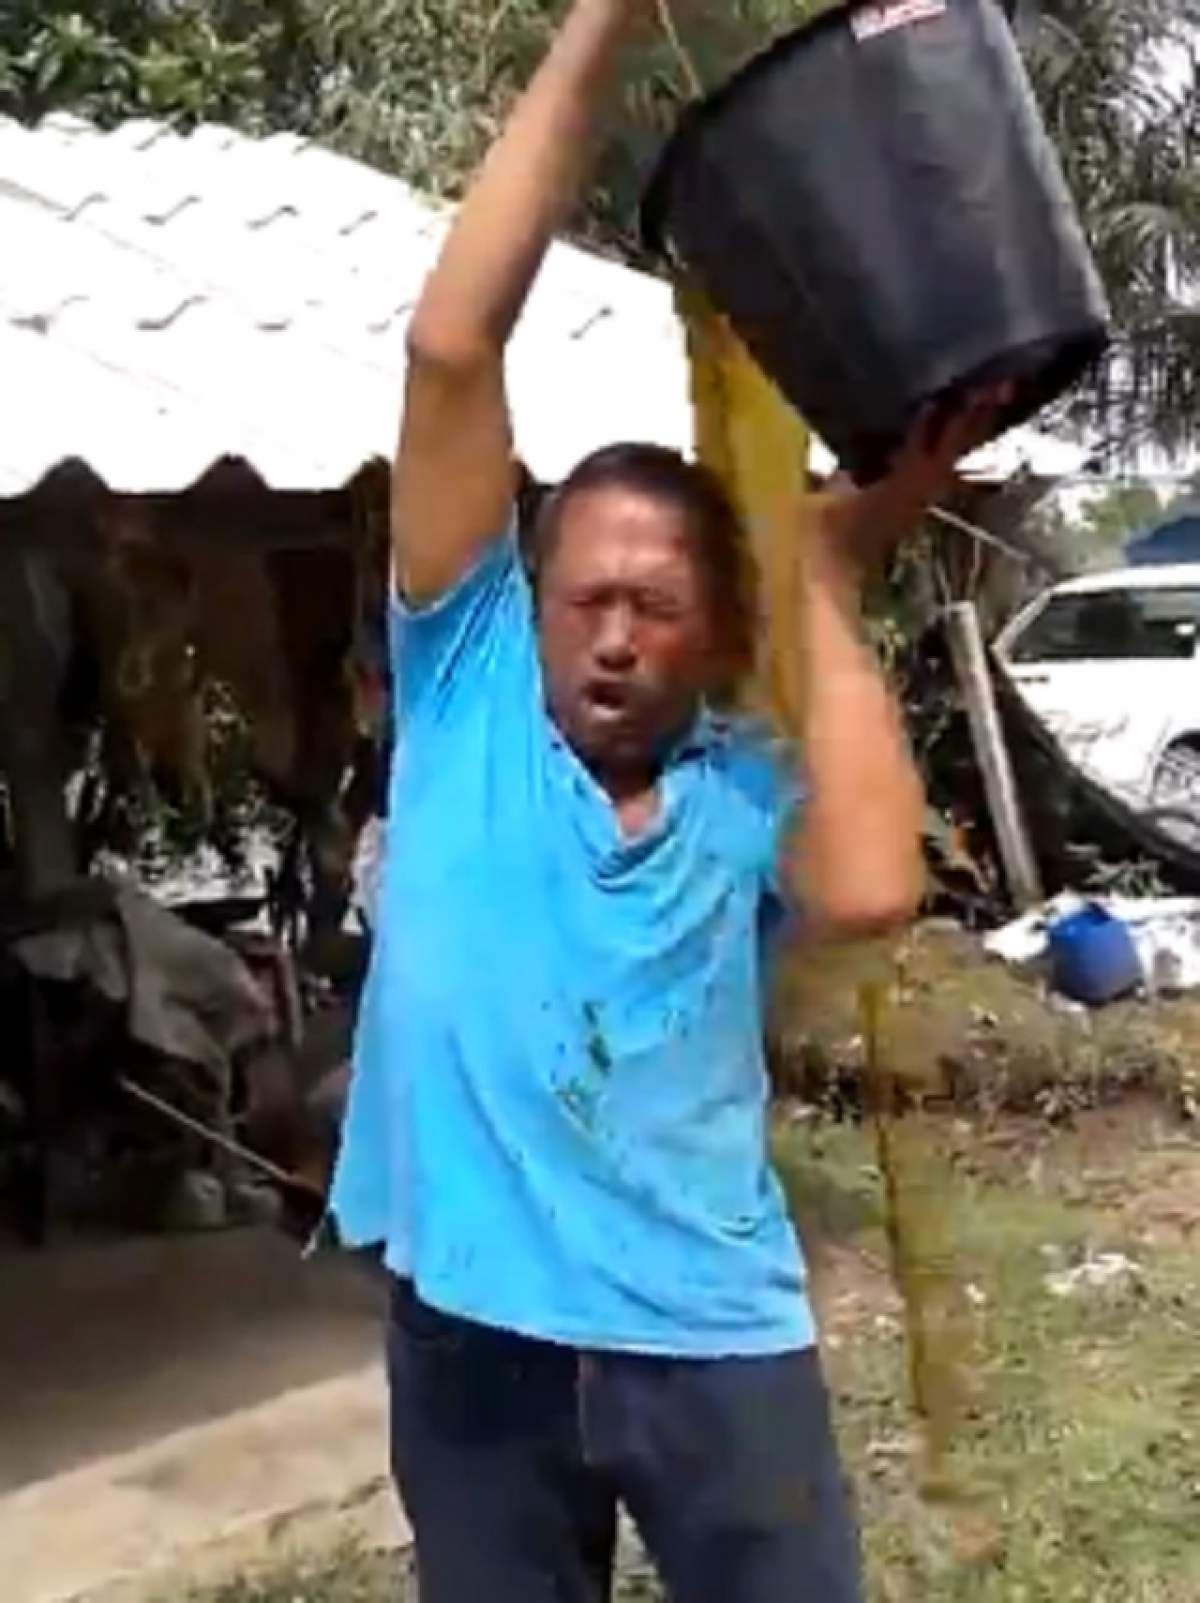 VIDEO / Ce ice bucket, poate "rahat" bucket! Un bărbat şi-a turnat pe cap o găleată cu excremente